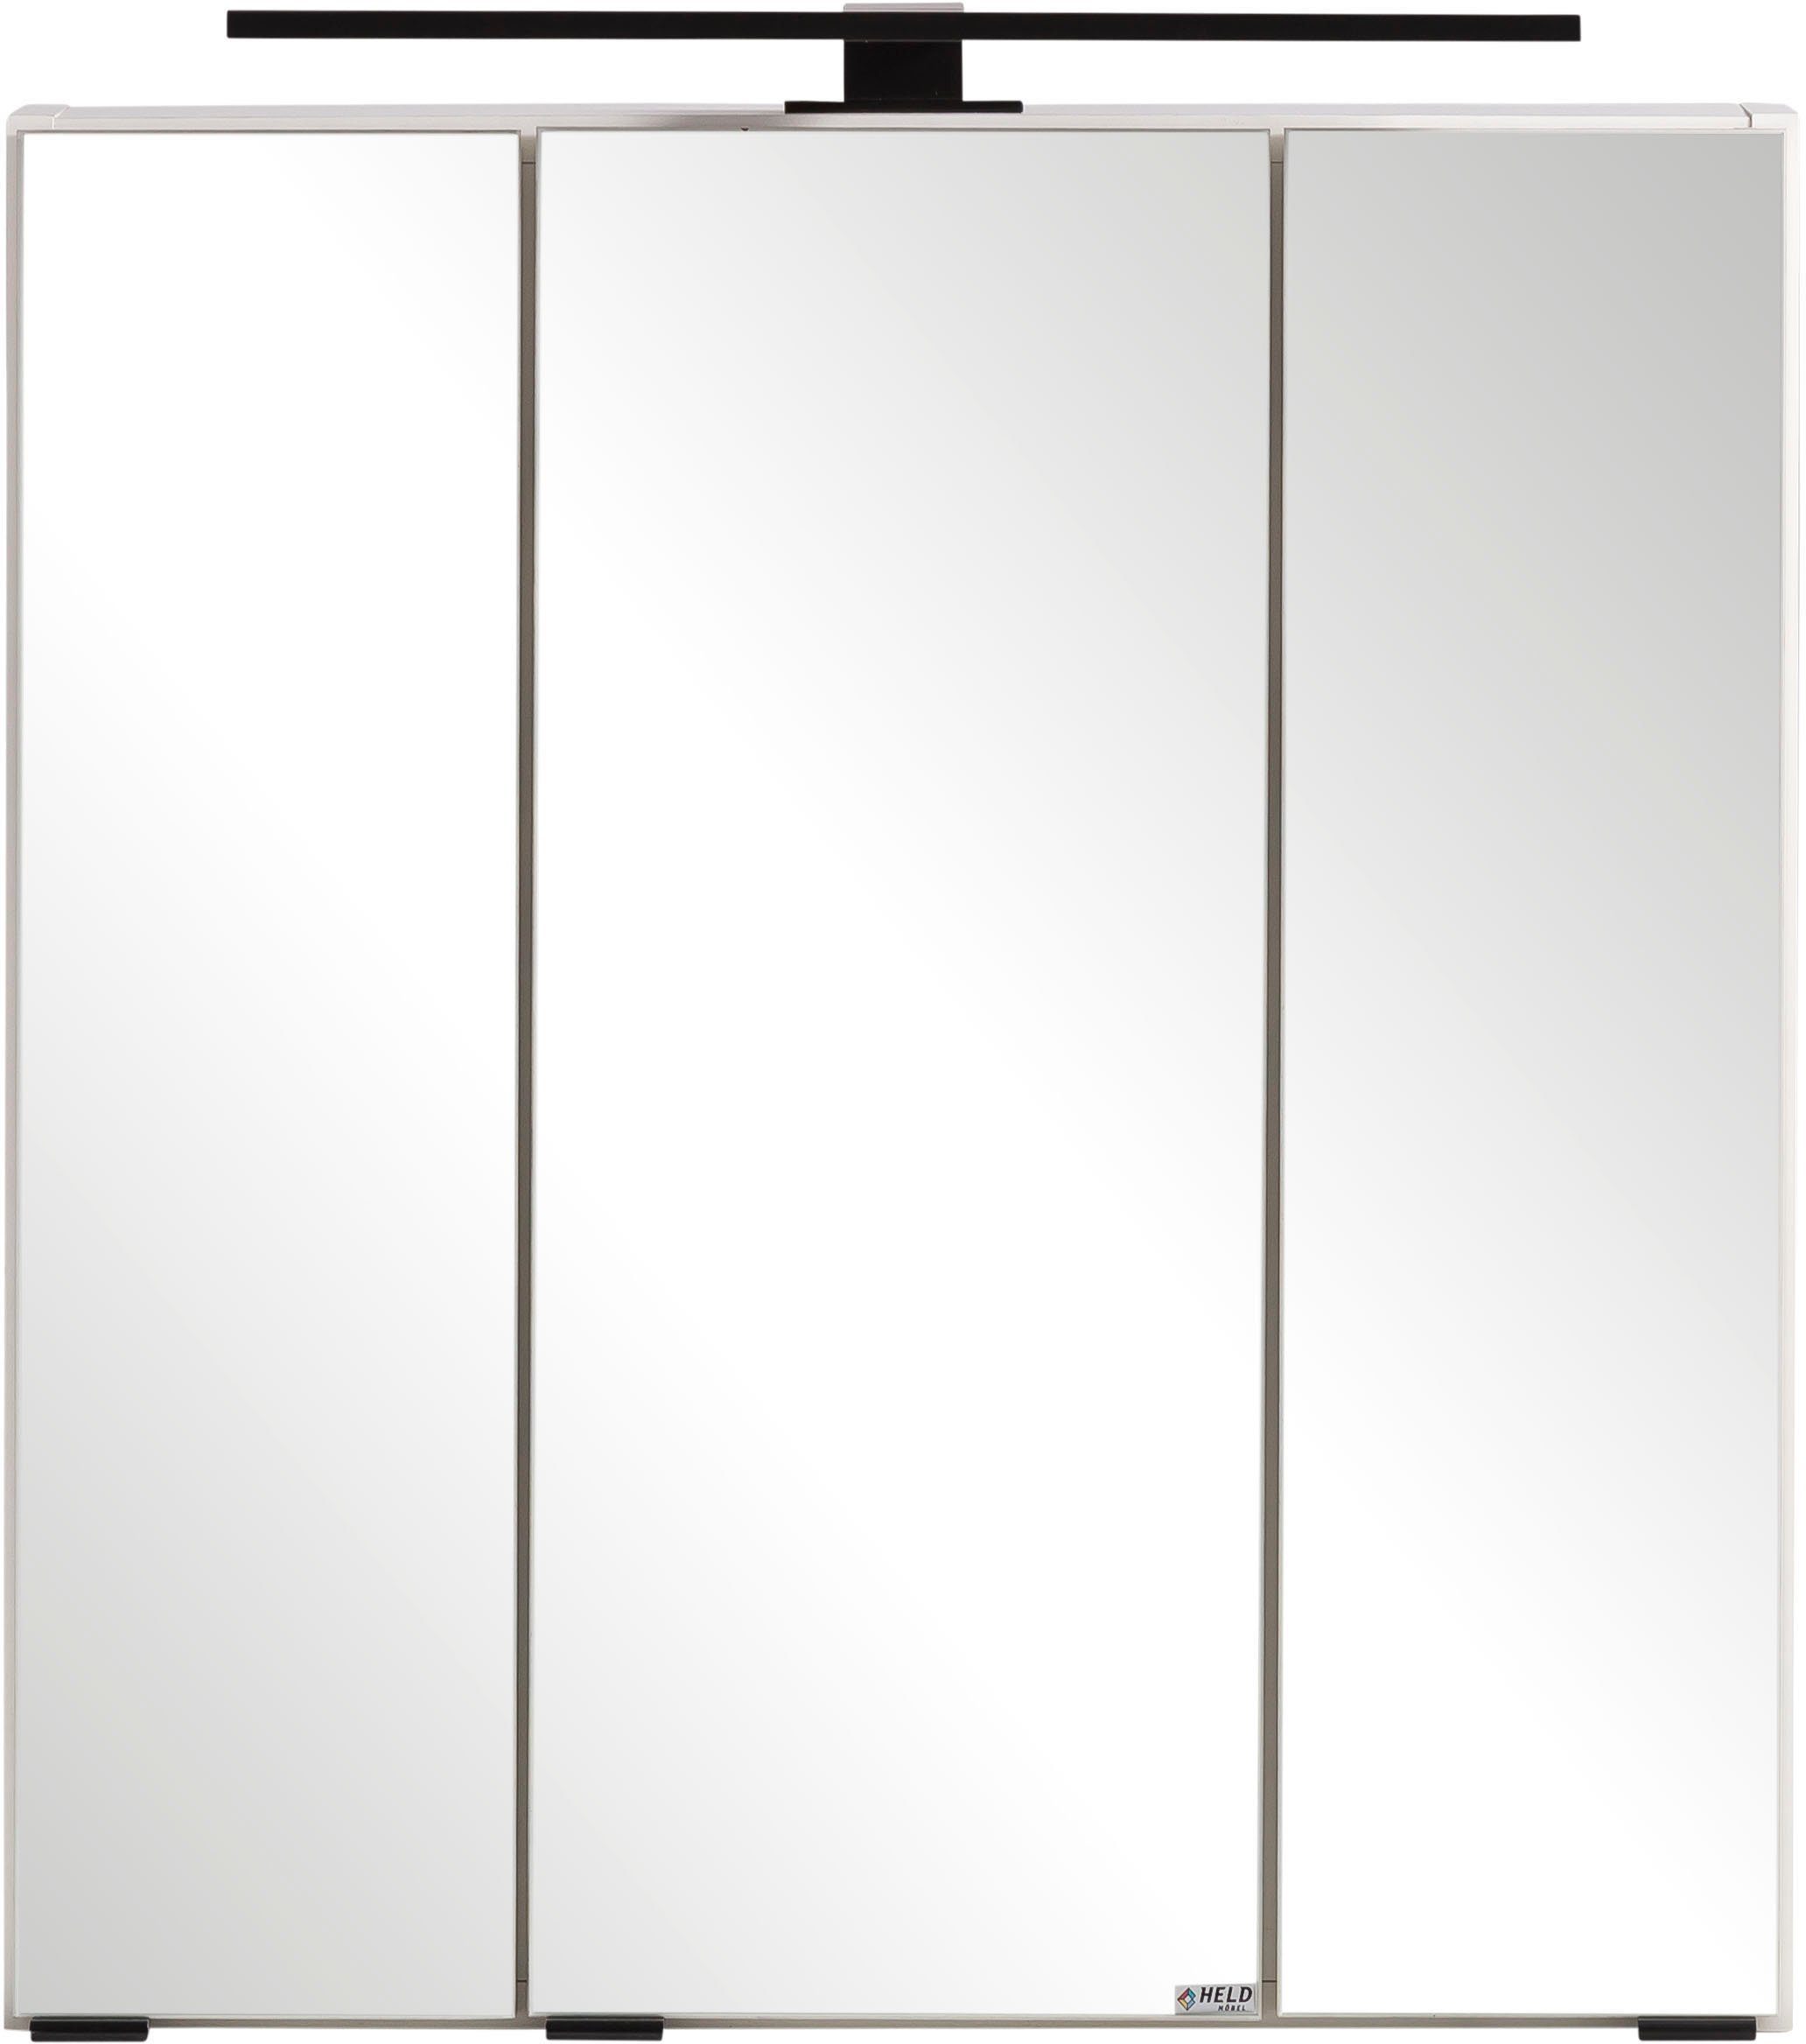 HELD MÖBEL Spiegelschrank Lana Badmöbel, 60 cm breit weiß | weiß | Spiegelschränke